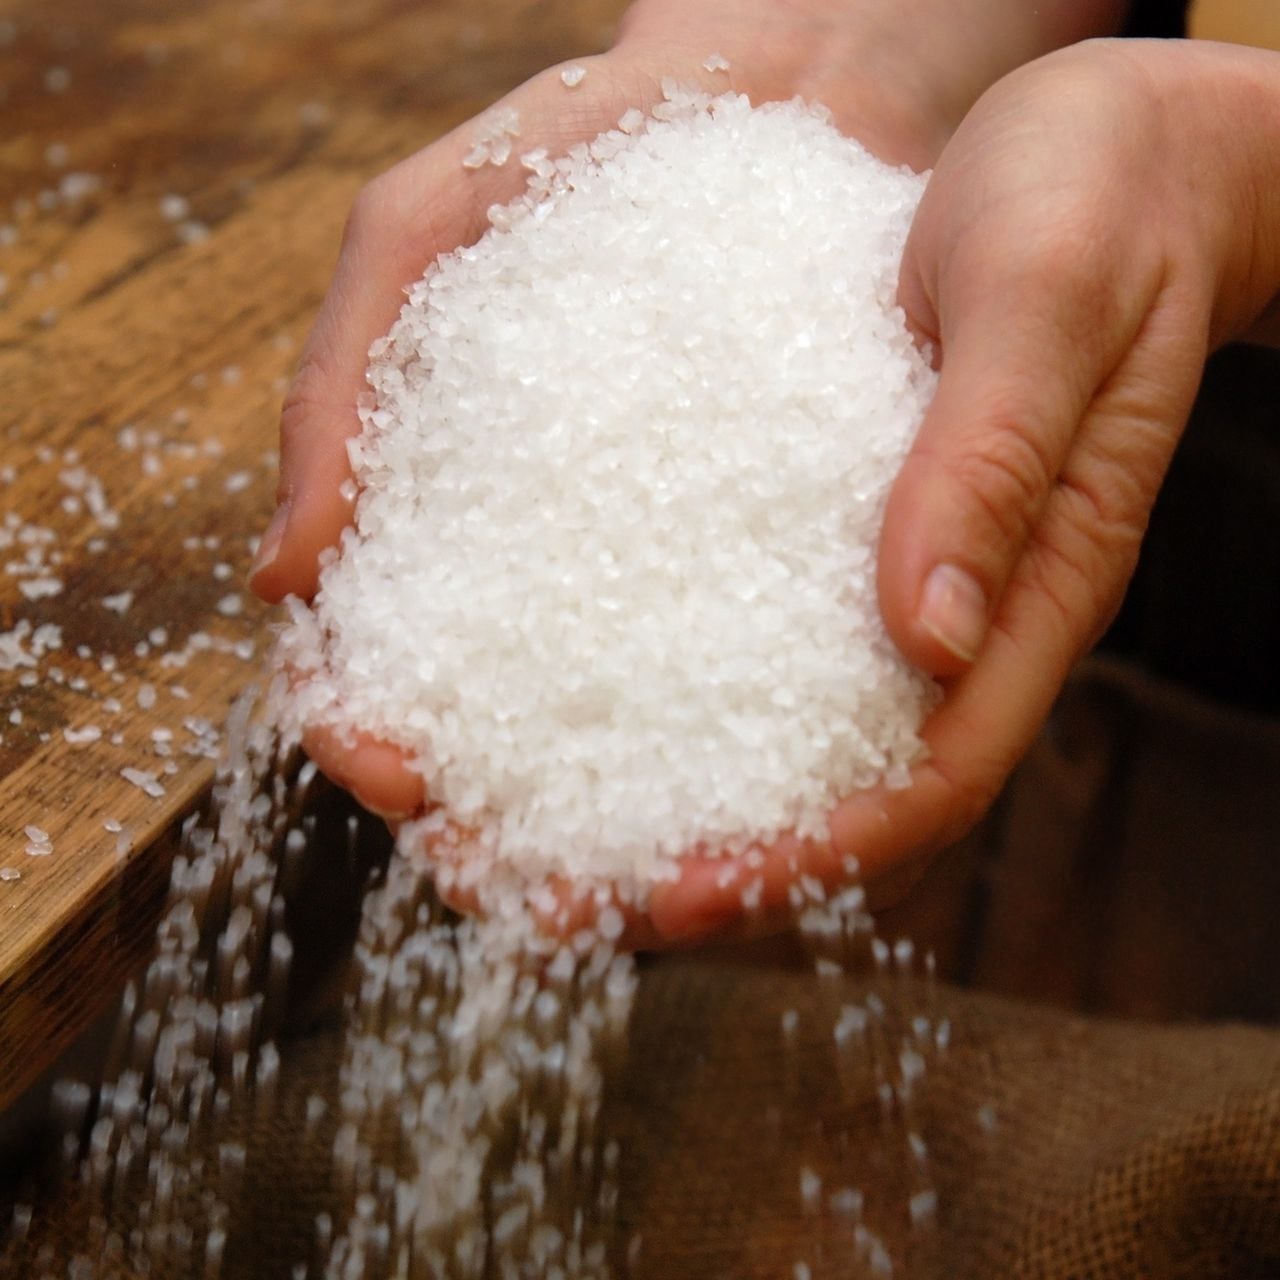 Dónde colocar la piedra de sal en casa para alejar las malas energías? 3  rincones y su significado